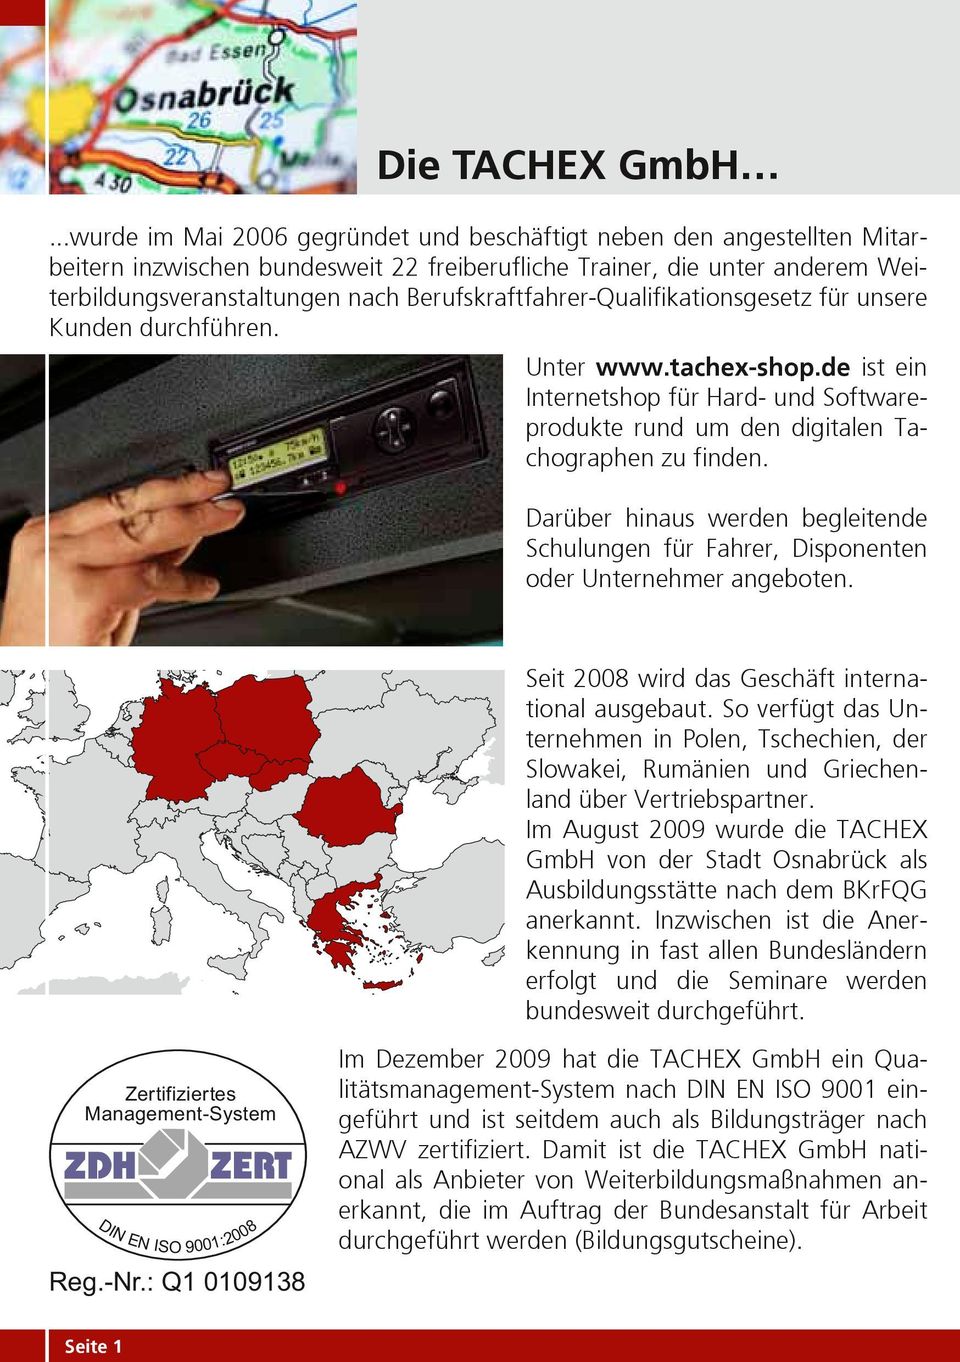 Berufskraftfahrer-Qualifikationsgesetz für unsere Kunden durchführen. Unter www.tachex-shop.de ist ein Internetshop für Hard- und Softwareprodukte rund um den digitalen Tachographen zu finden.